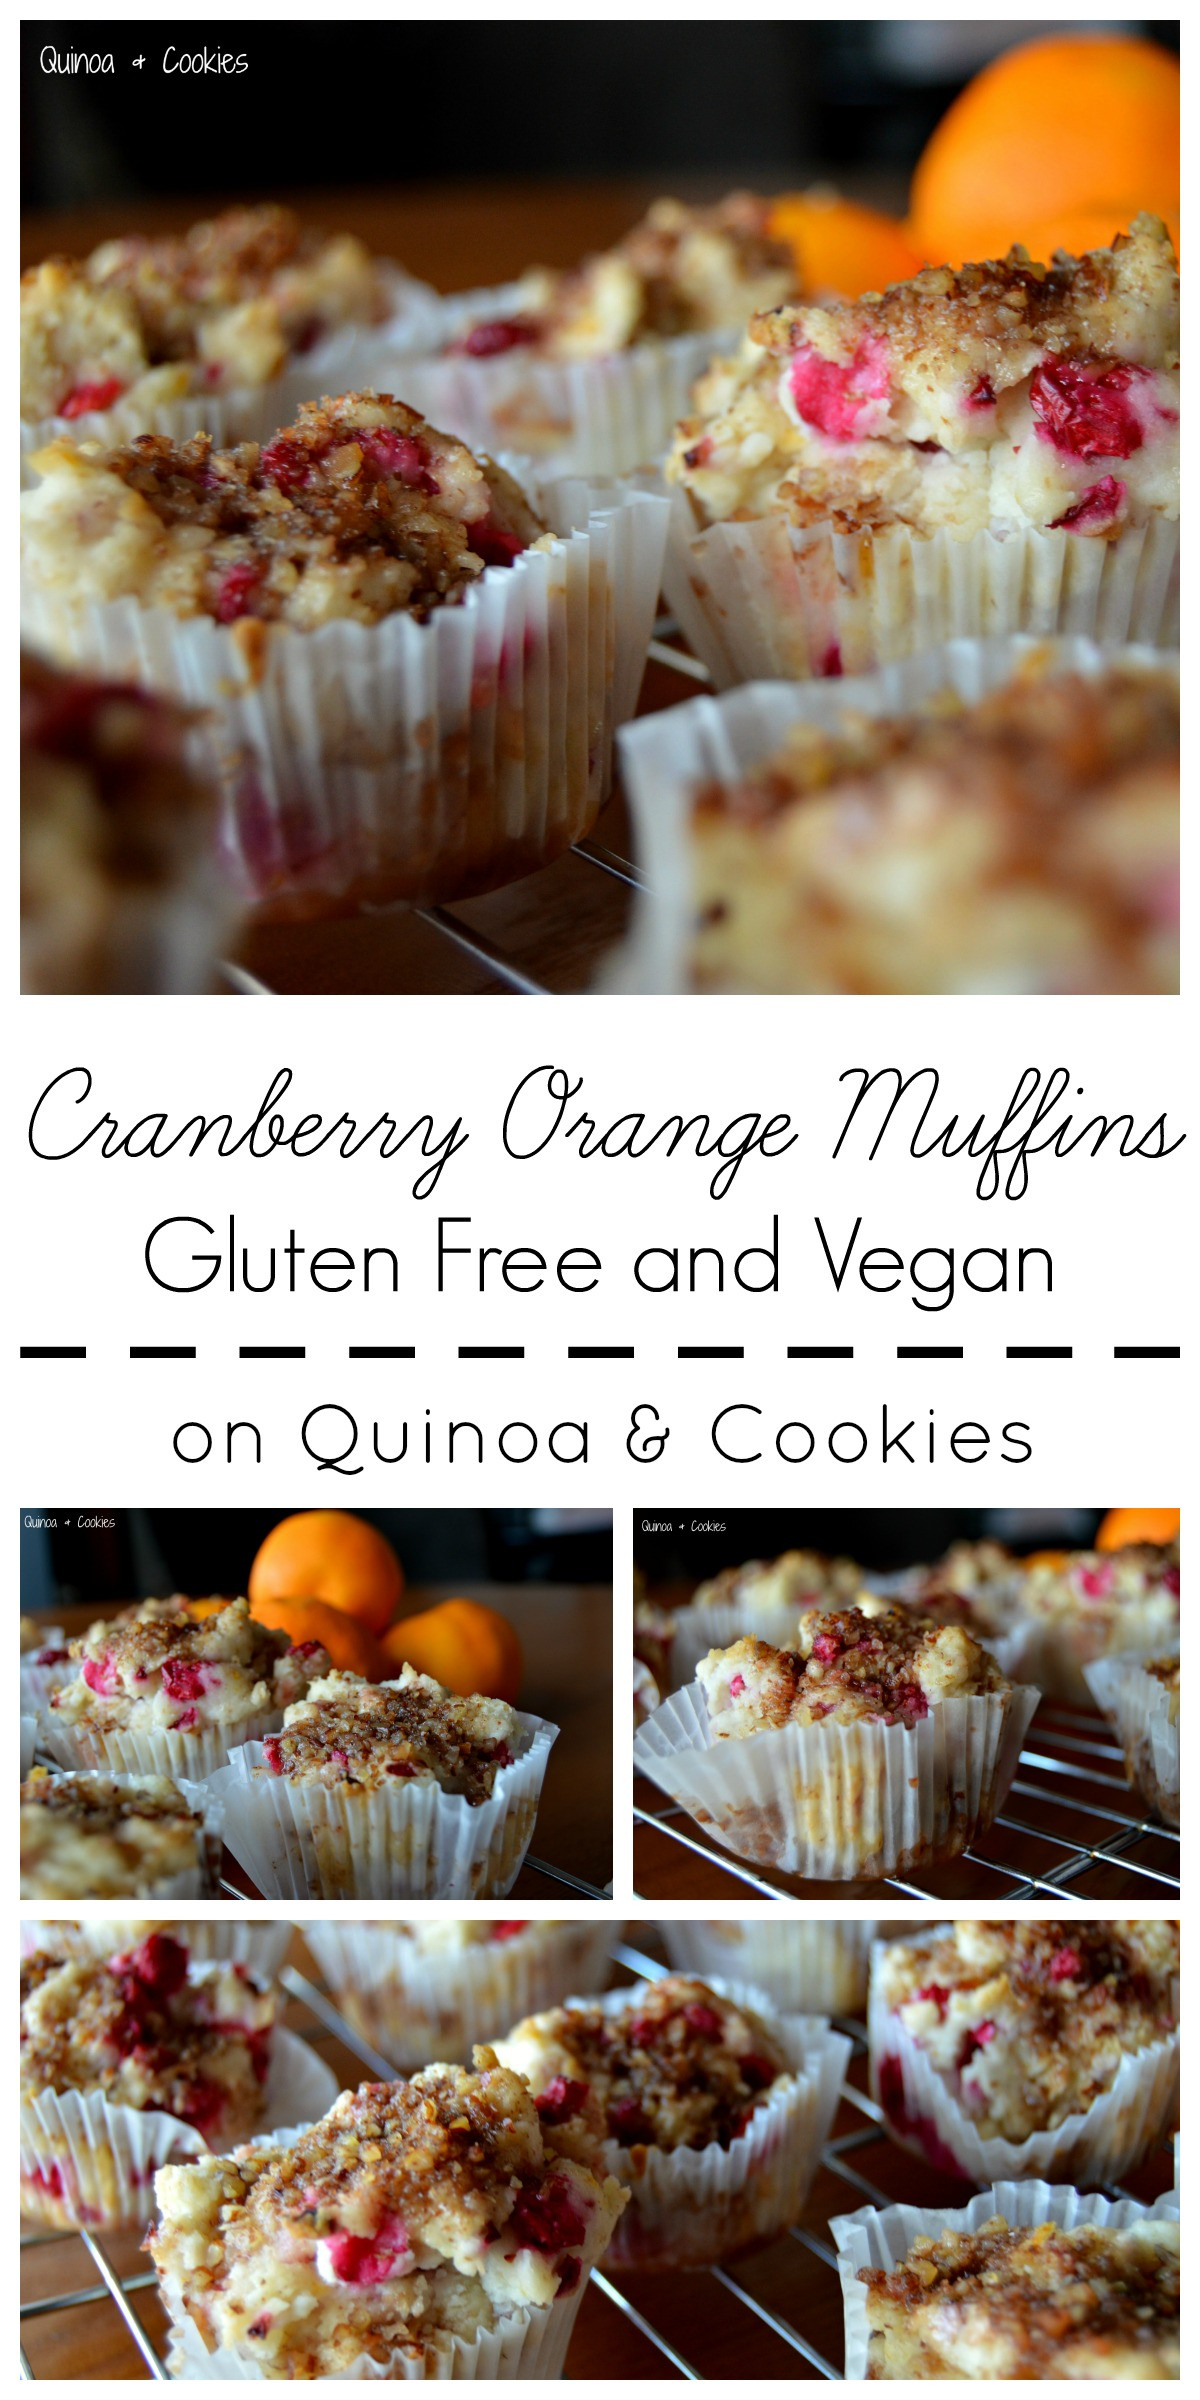 Quinoa Have Gluten
 Cranberry Orange Muffins Gluten Free & Vegan